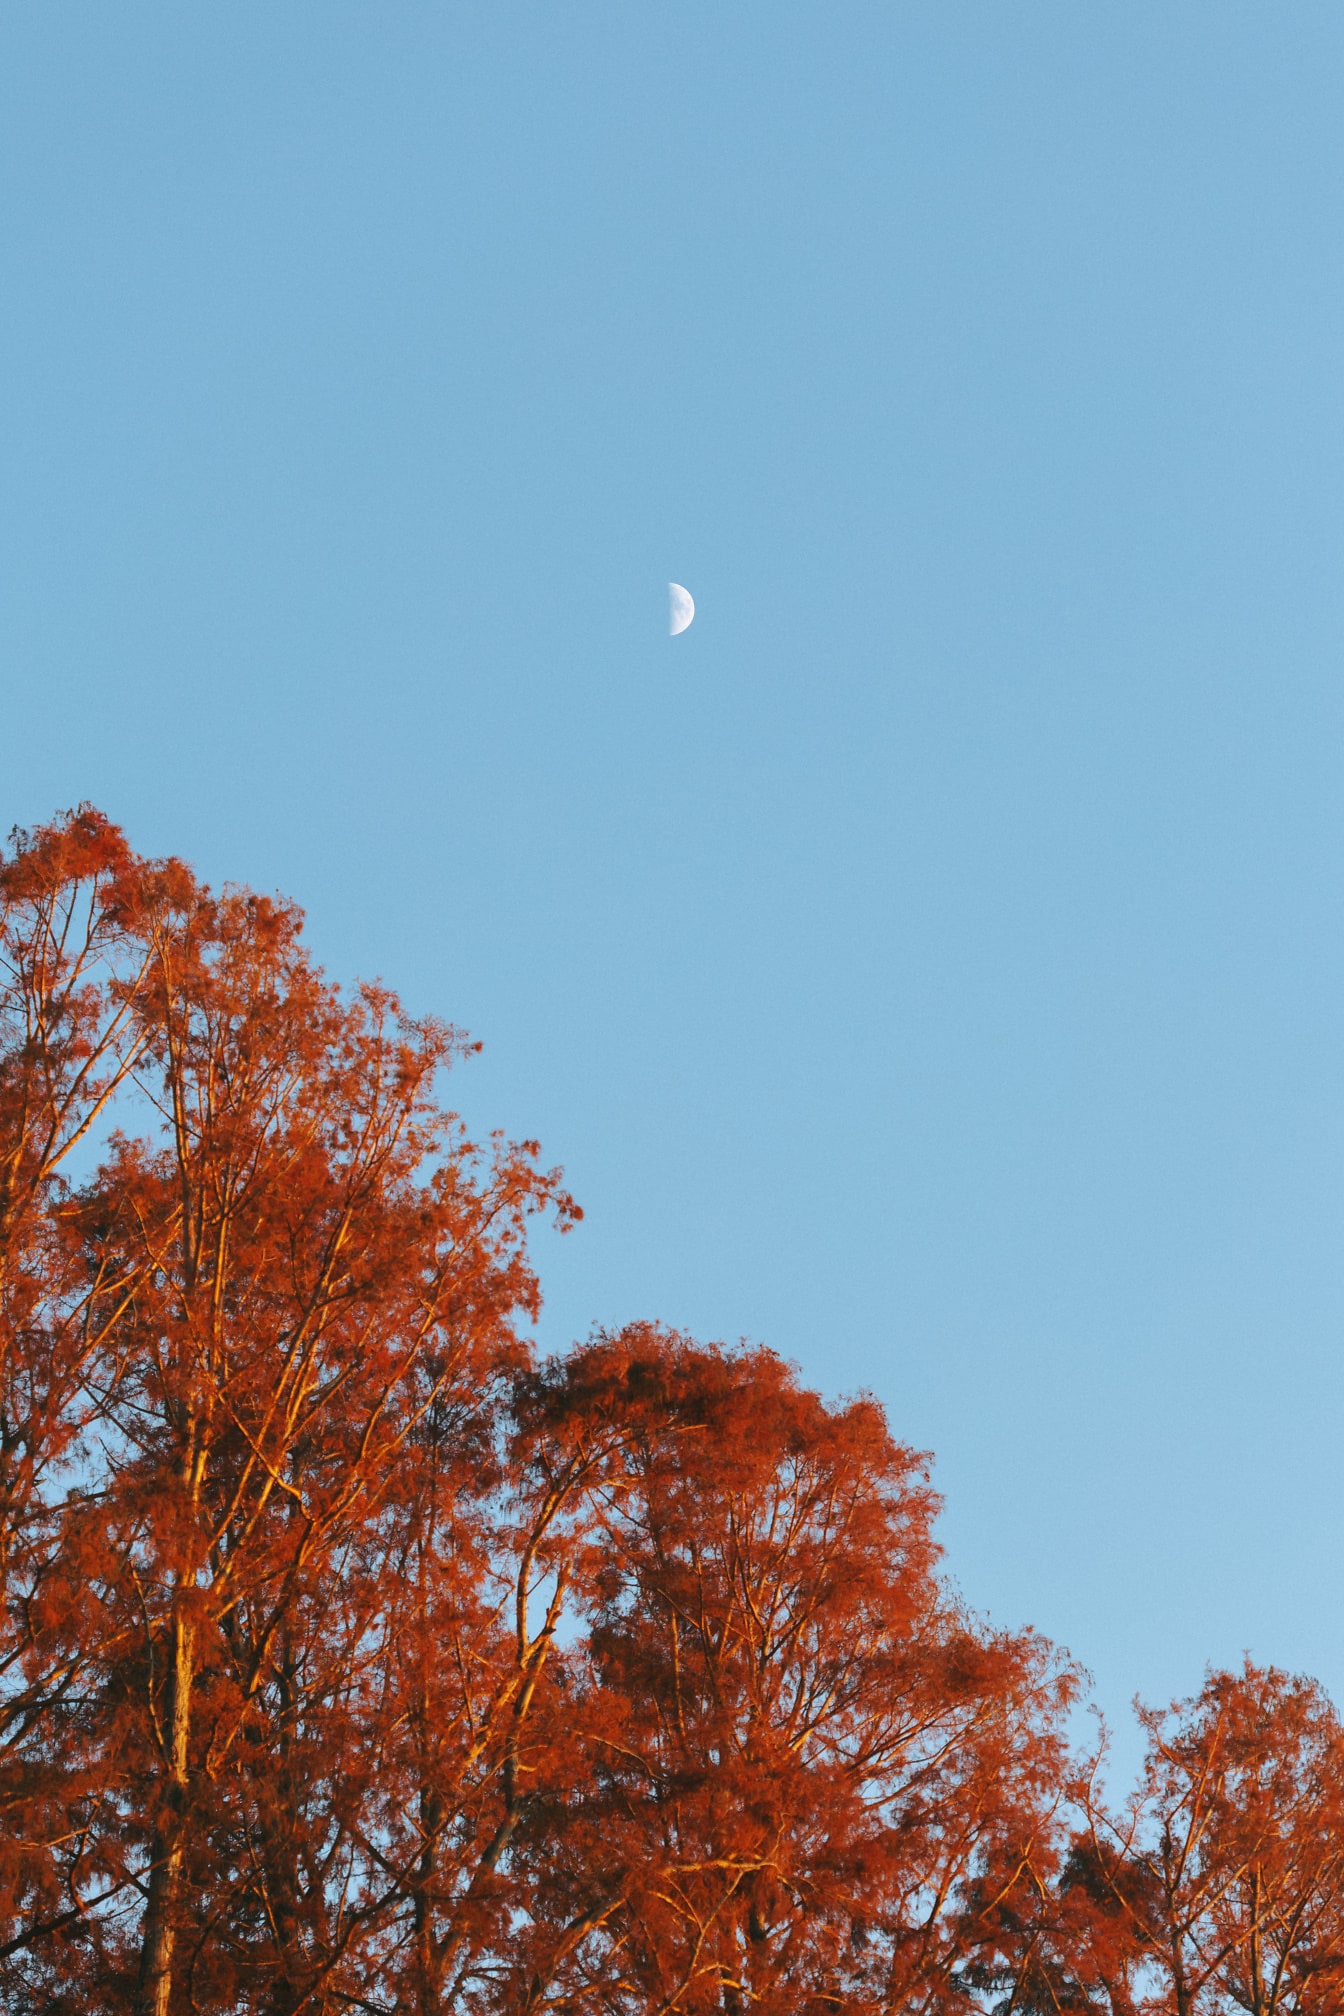 Orange gule blade på træer med lyseblå himmel med måneformørkelse